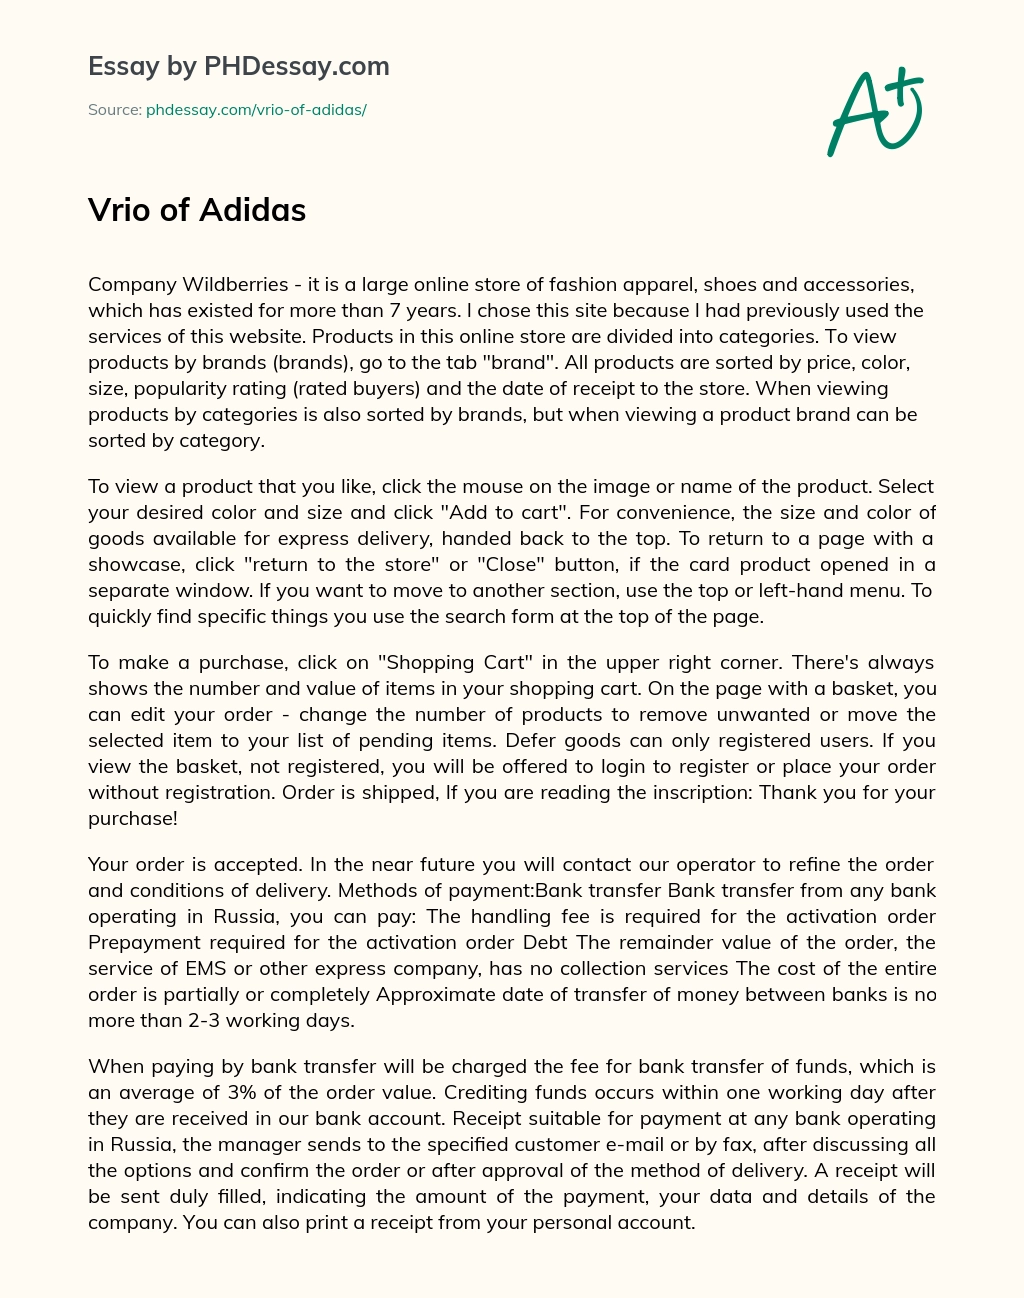 Vrio of Adidas essay